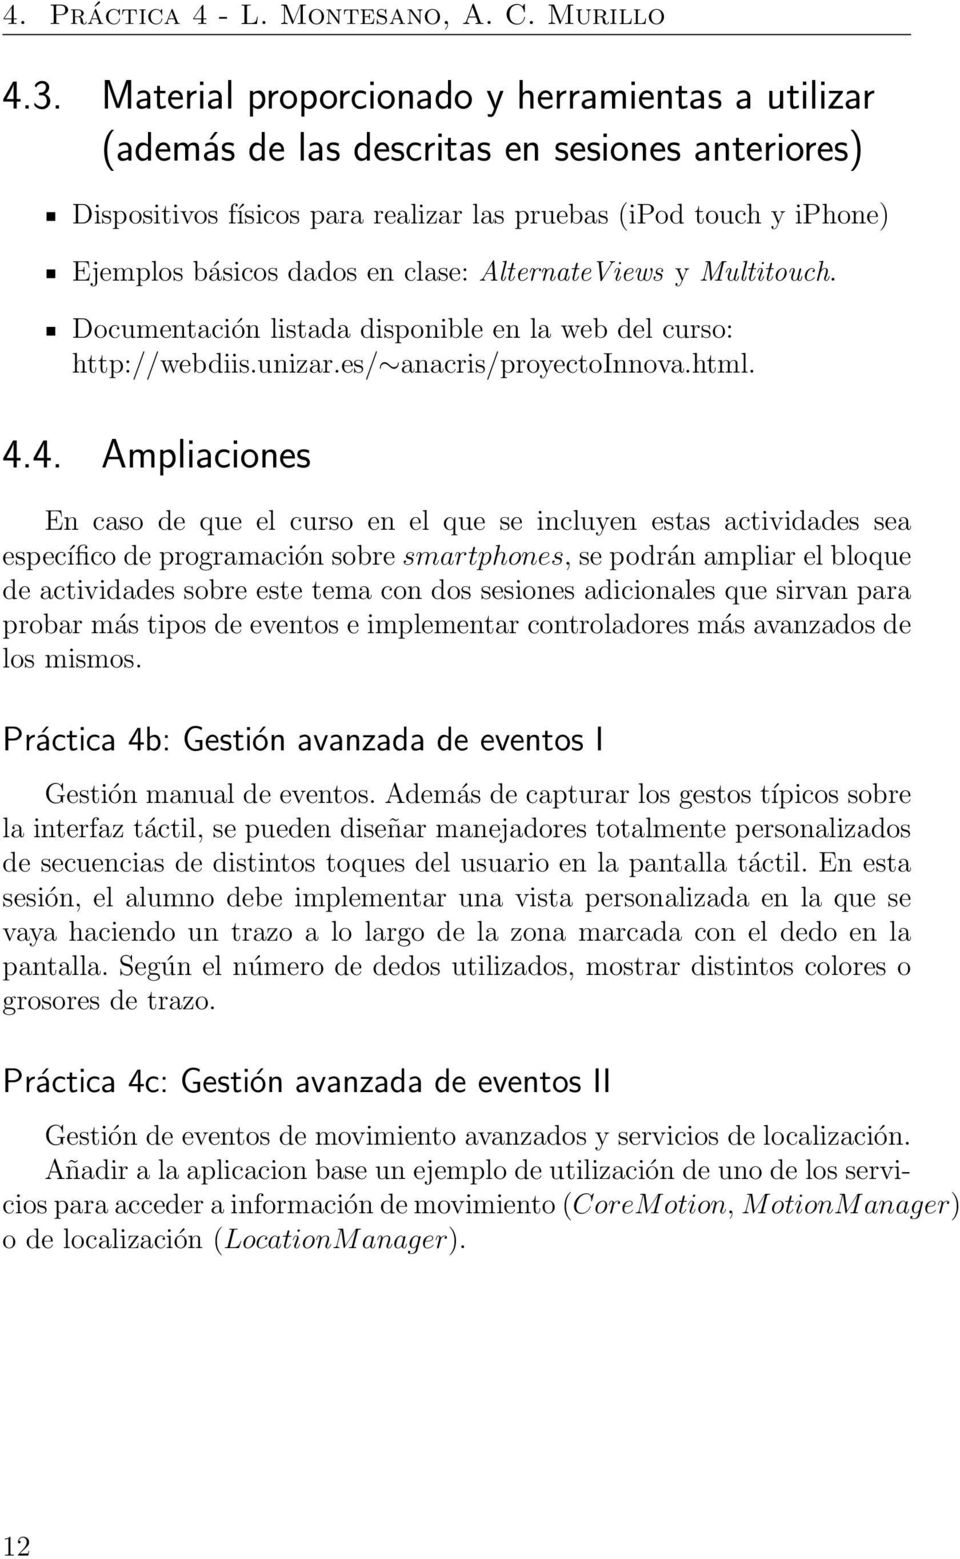 AlternateViews y Multitouch. Documentación listada disponible en la web del curso: http://webdiis.unizar.es/ anacris/proyectoinnova.html. 4.